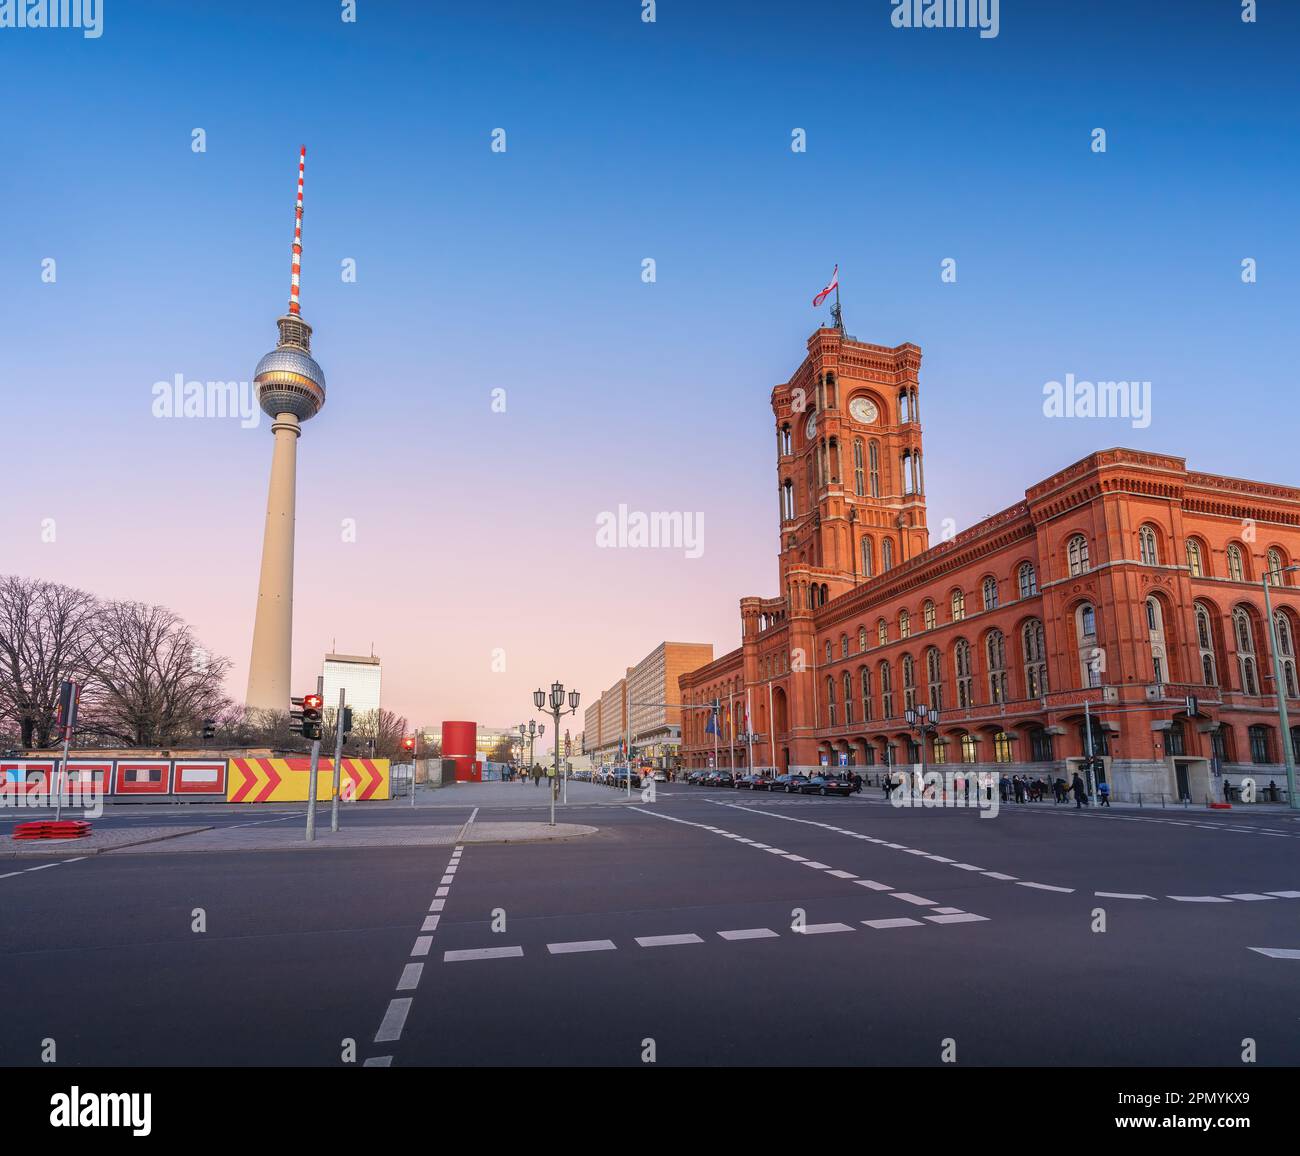 Municipio di Berlino (Rotes Rathaus) e Torre della televisione (Fernsehturm) al tramonto - Berlino, Germania Foto Stock